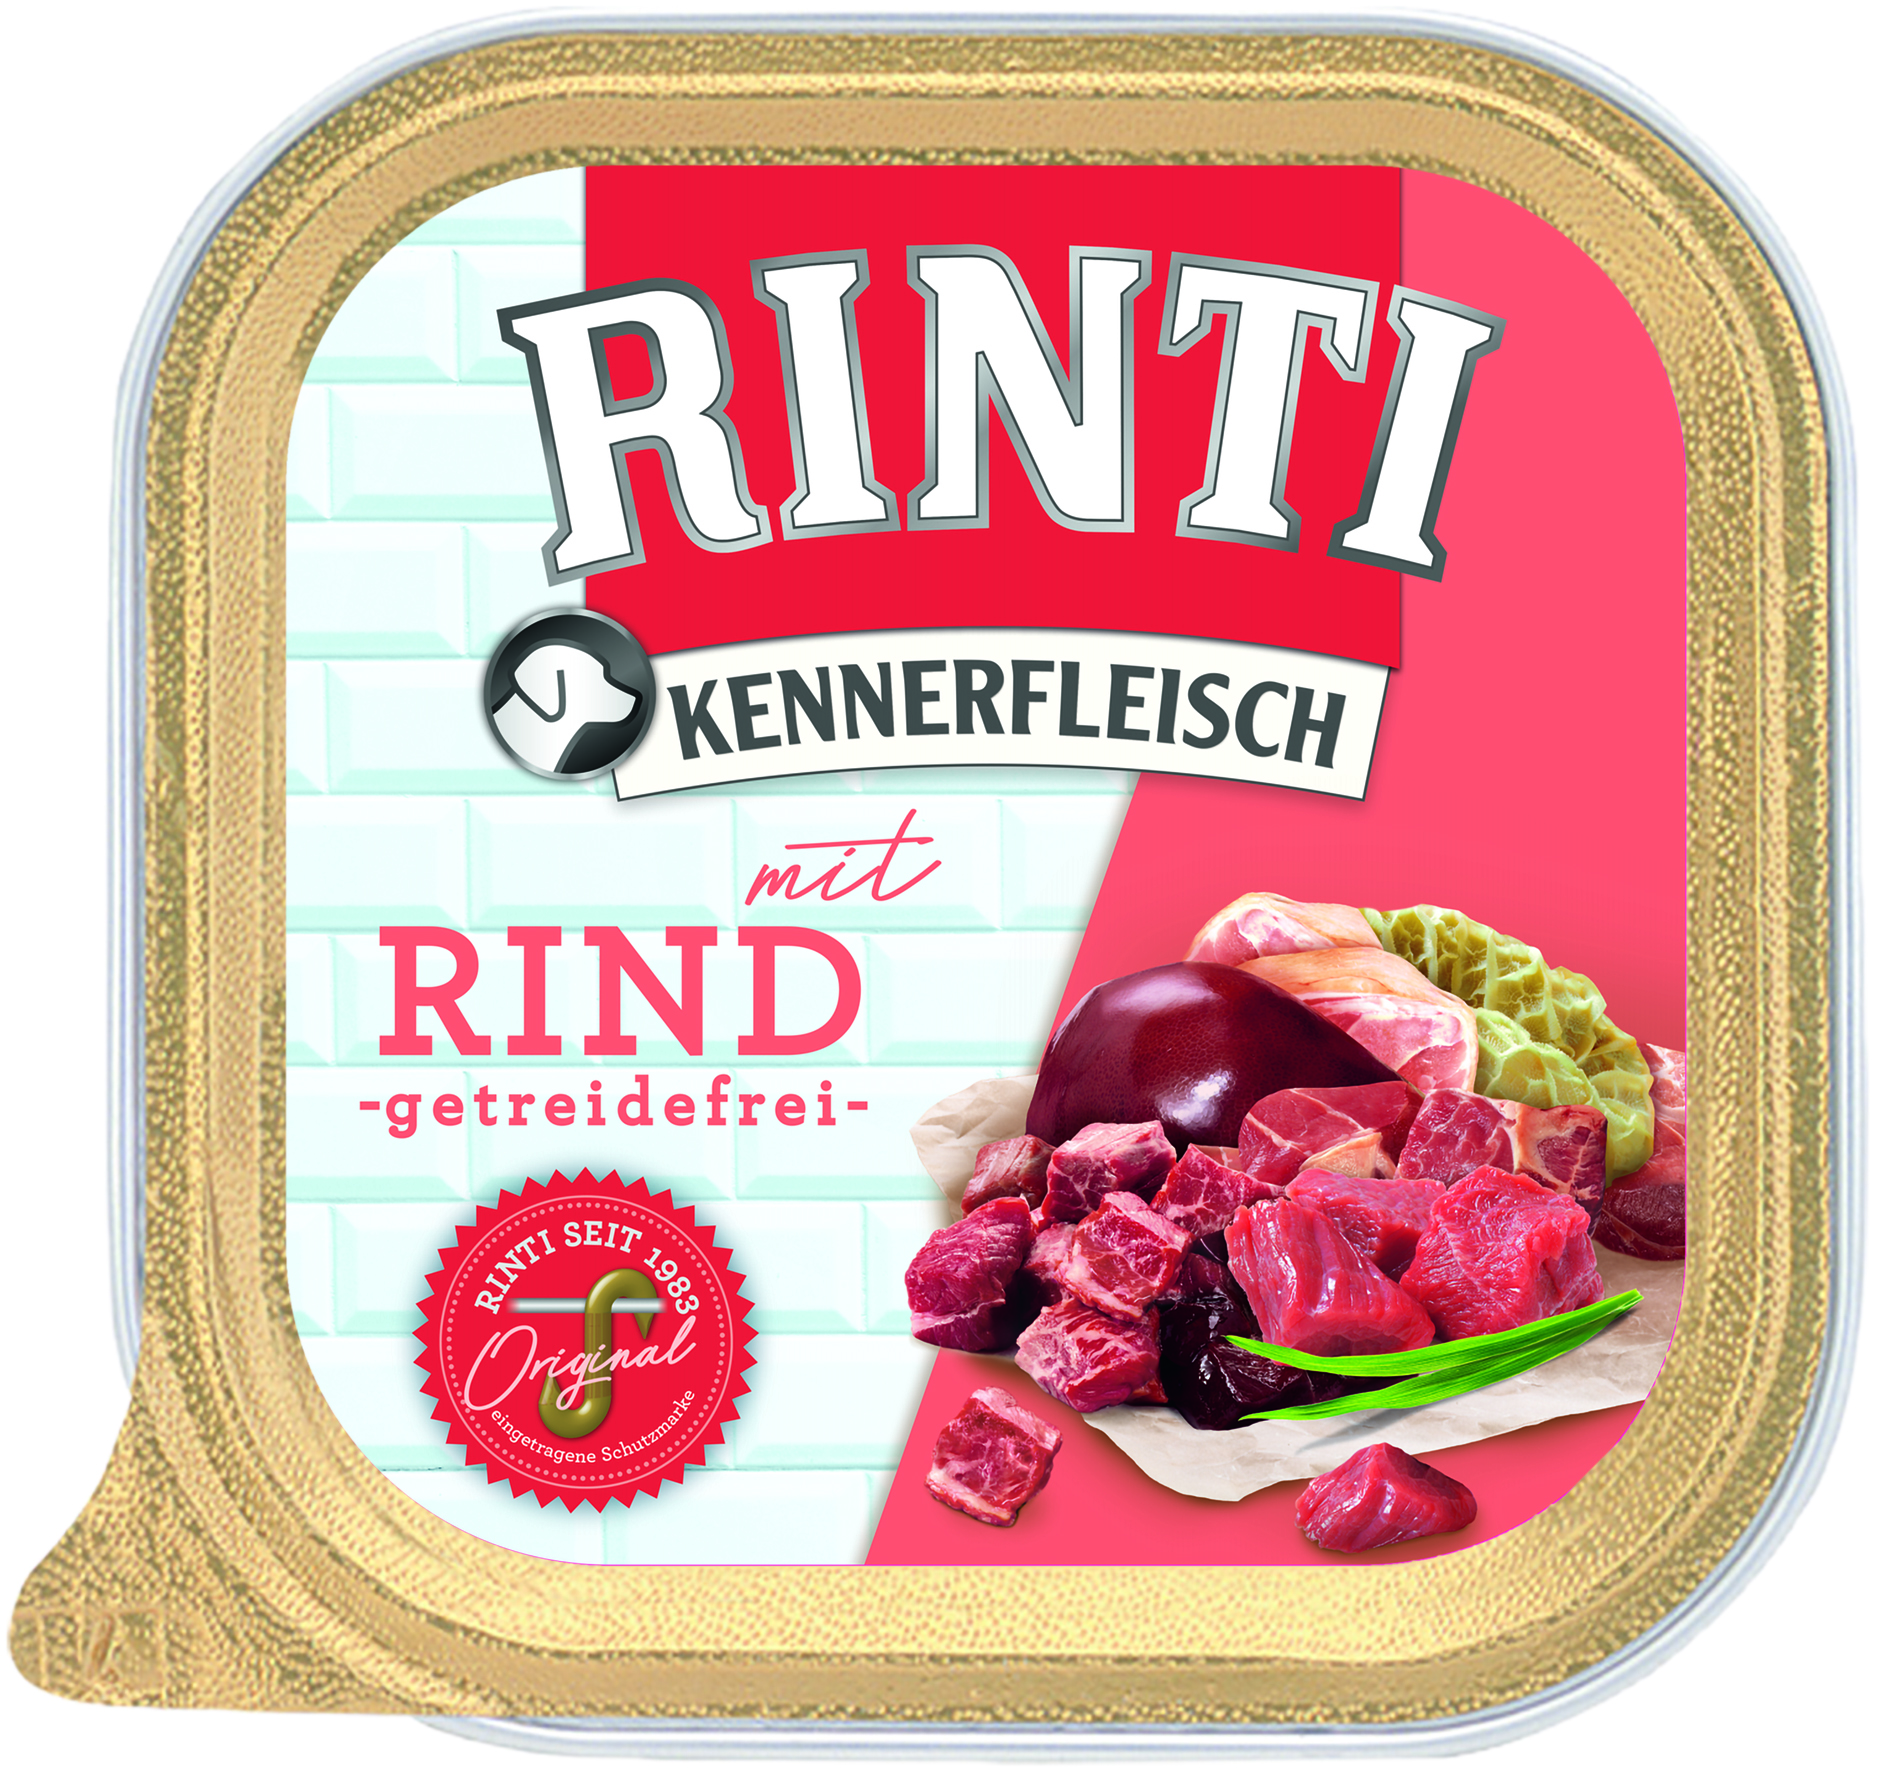 Rinti Kennerfleisch Plus Rind 300g